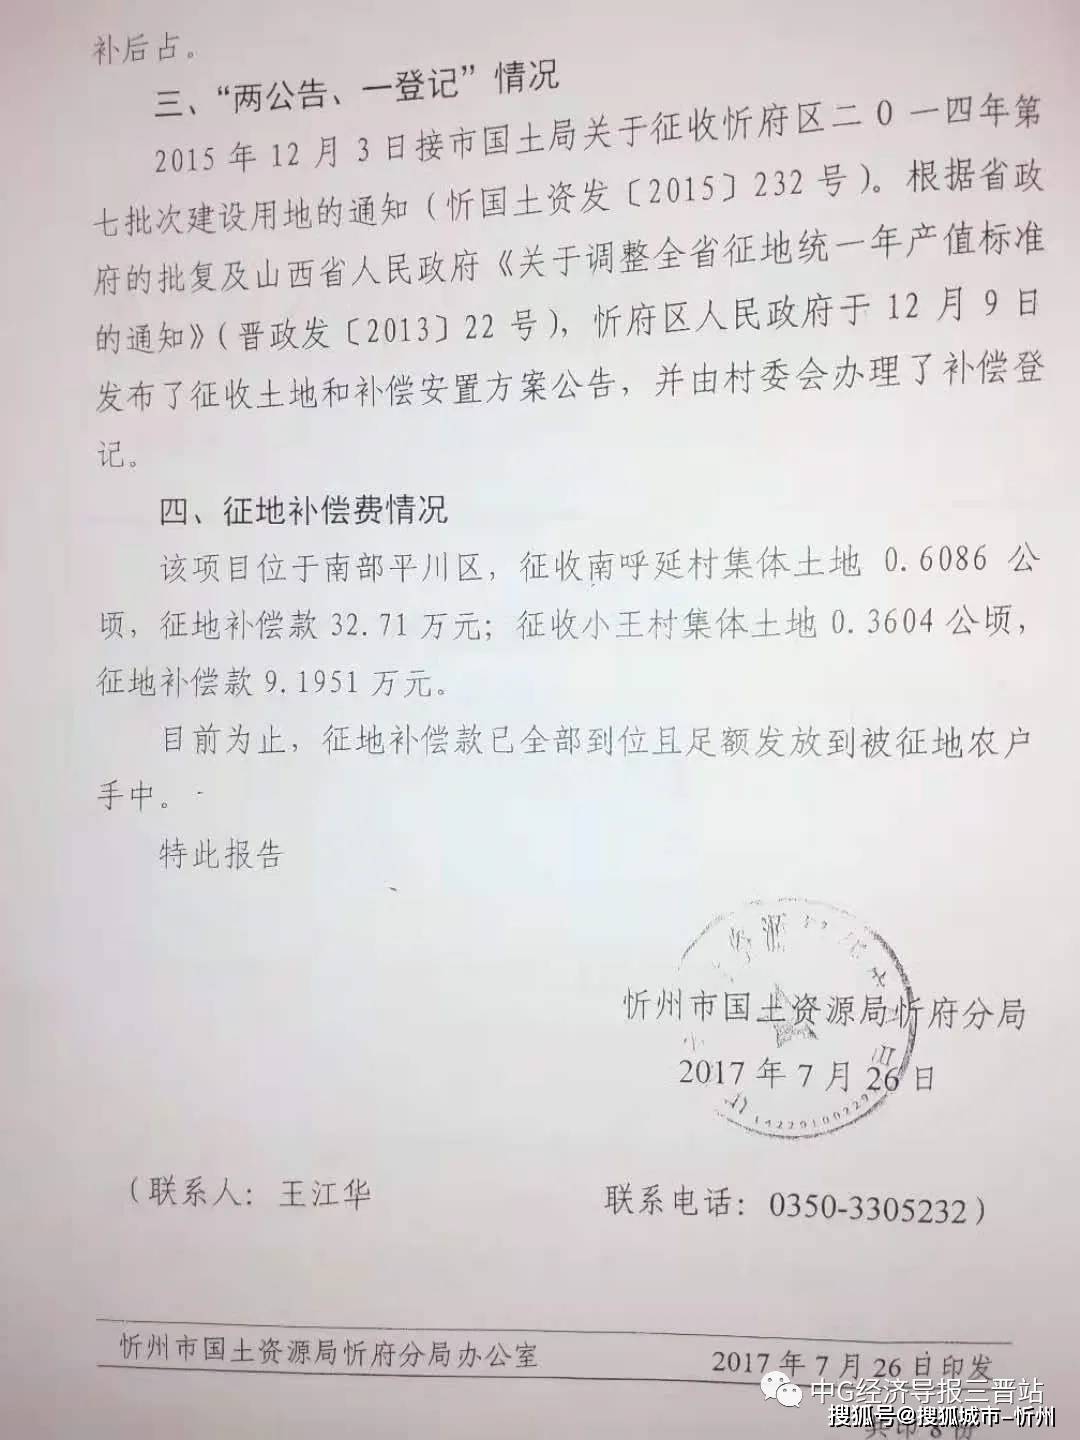 忻府区兰村乡小王村村民被冒名签署征地 放弃听证证明 谁来担责